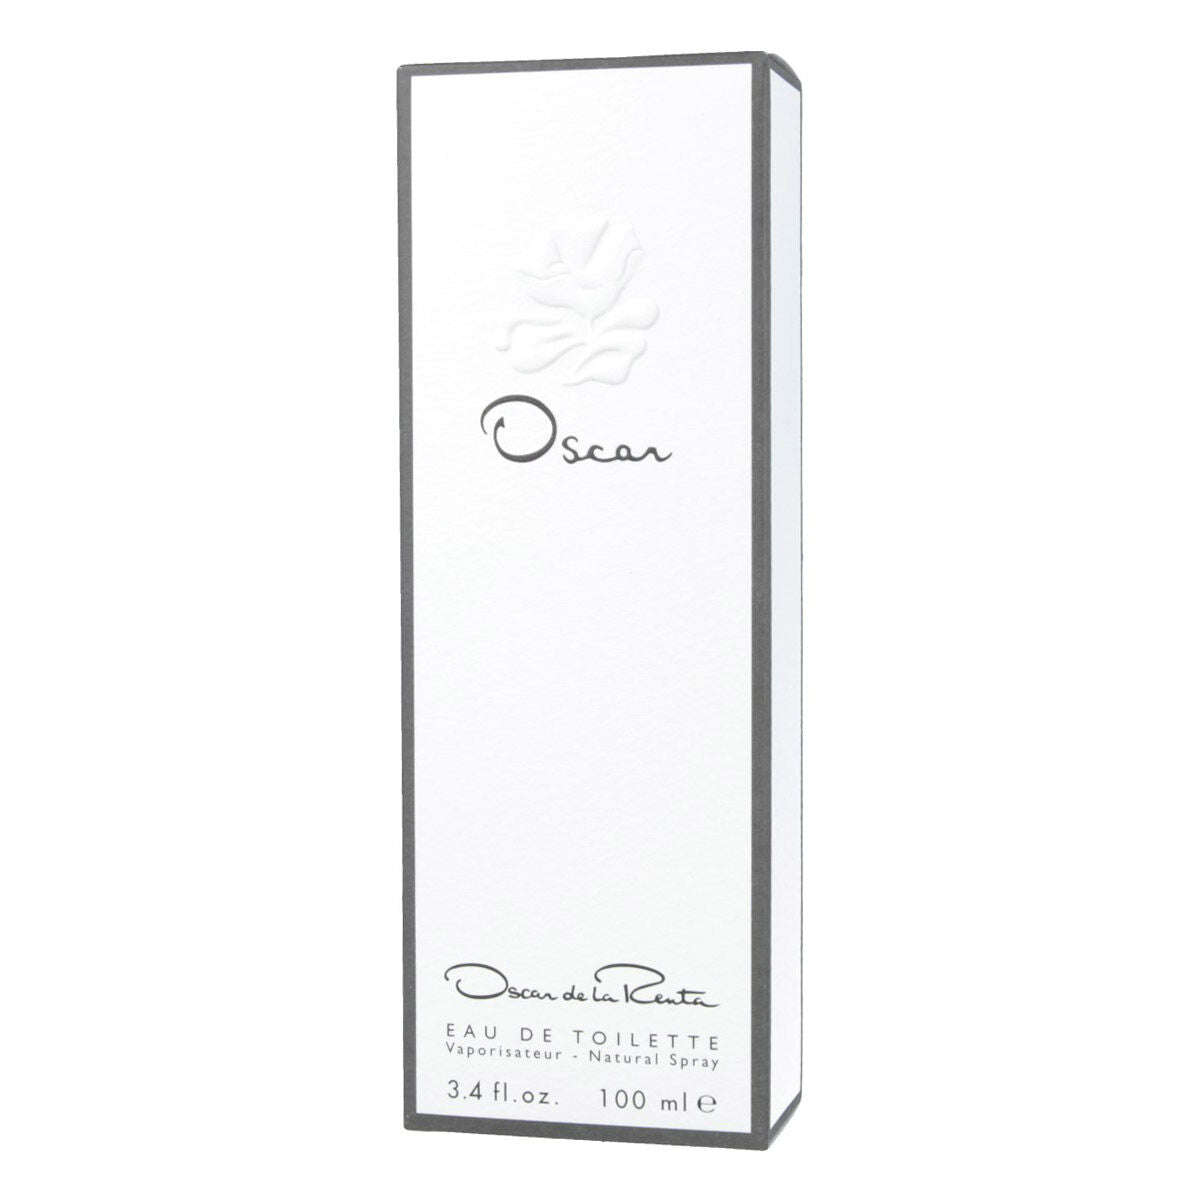 Ženski parfum Oscar de la Renta Oscar EDT 100 ml